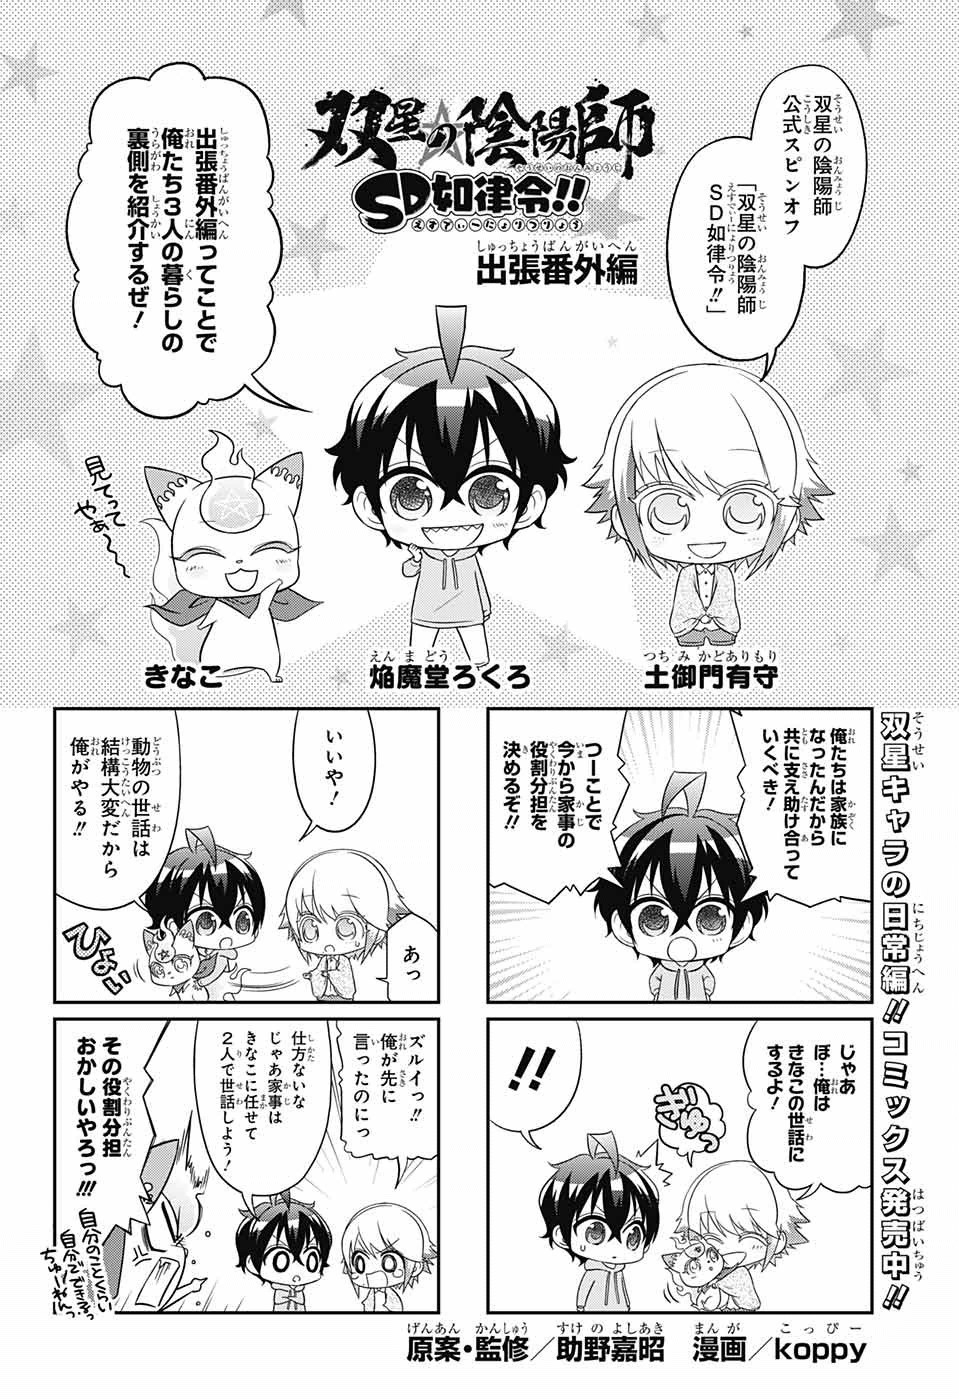 Sousei No Onmyouji Chapter 41 5 Page 1 Raw Manga 生漫画